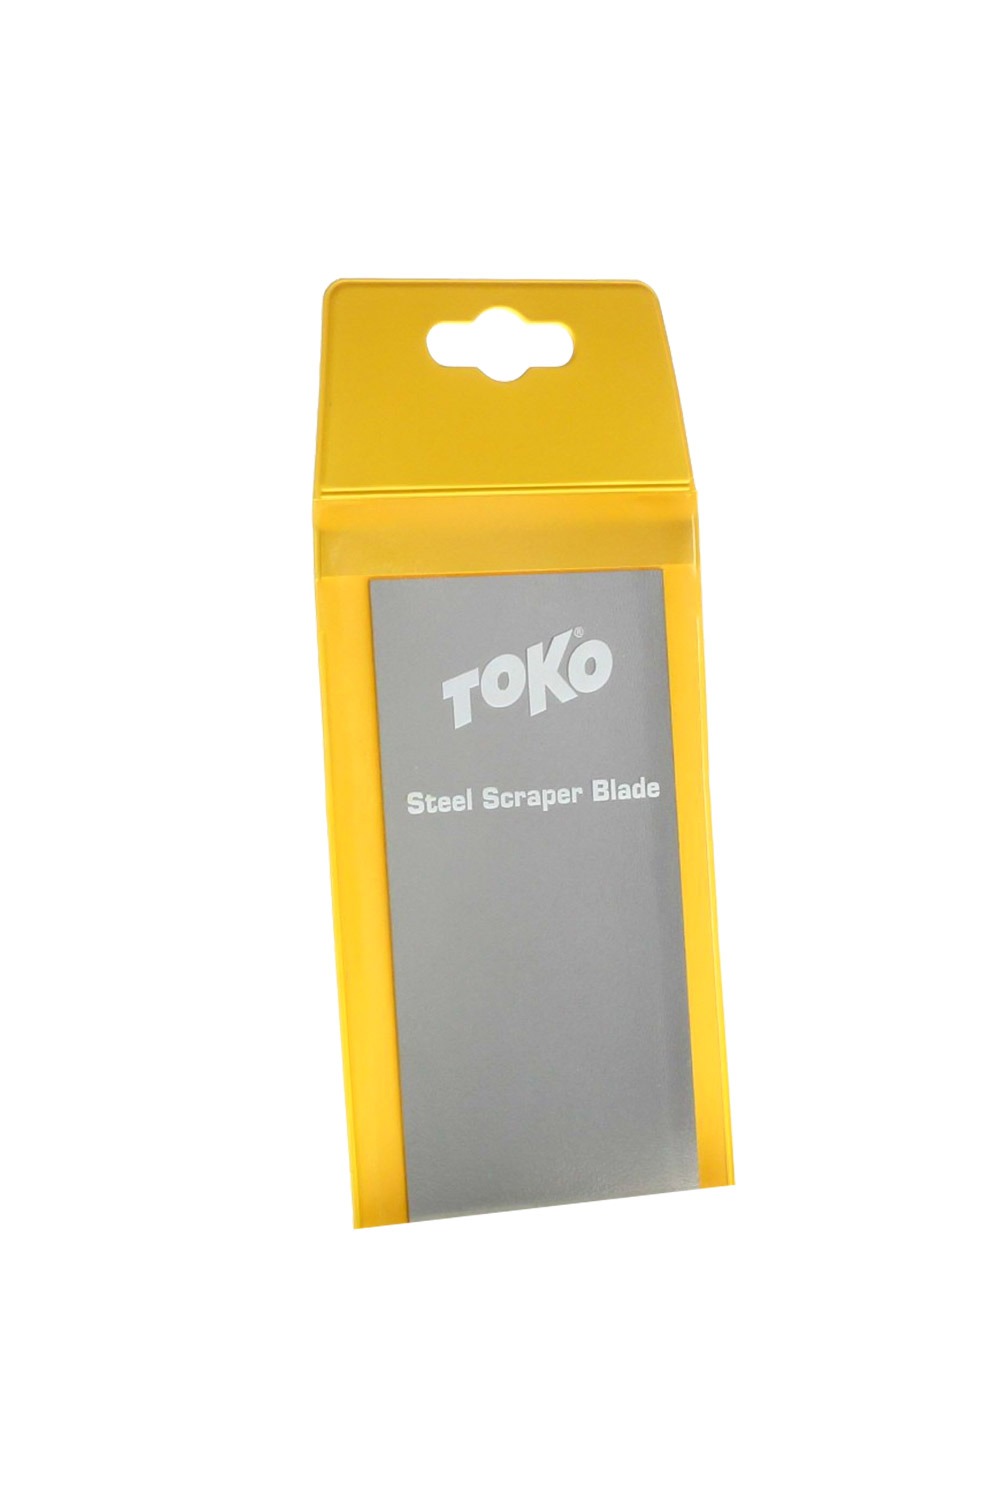 토코 데크 베이스 스틸 스크레퍼 TOKO STEEL SCRAPER BLADE/TOKO STEEL SCRAPER BLADE/-5560007_HTK80800_DHTK80800